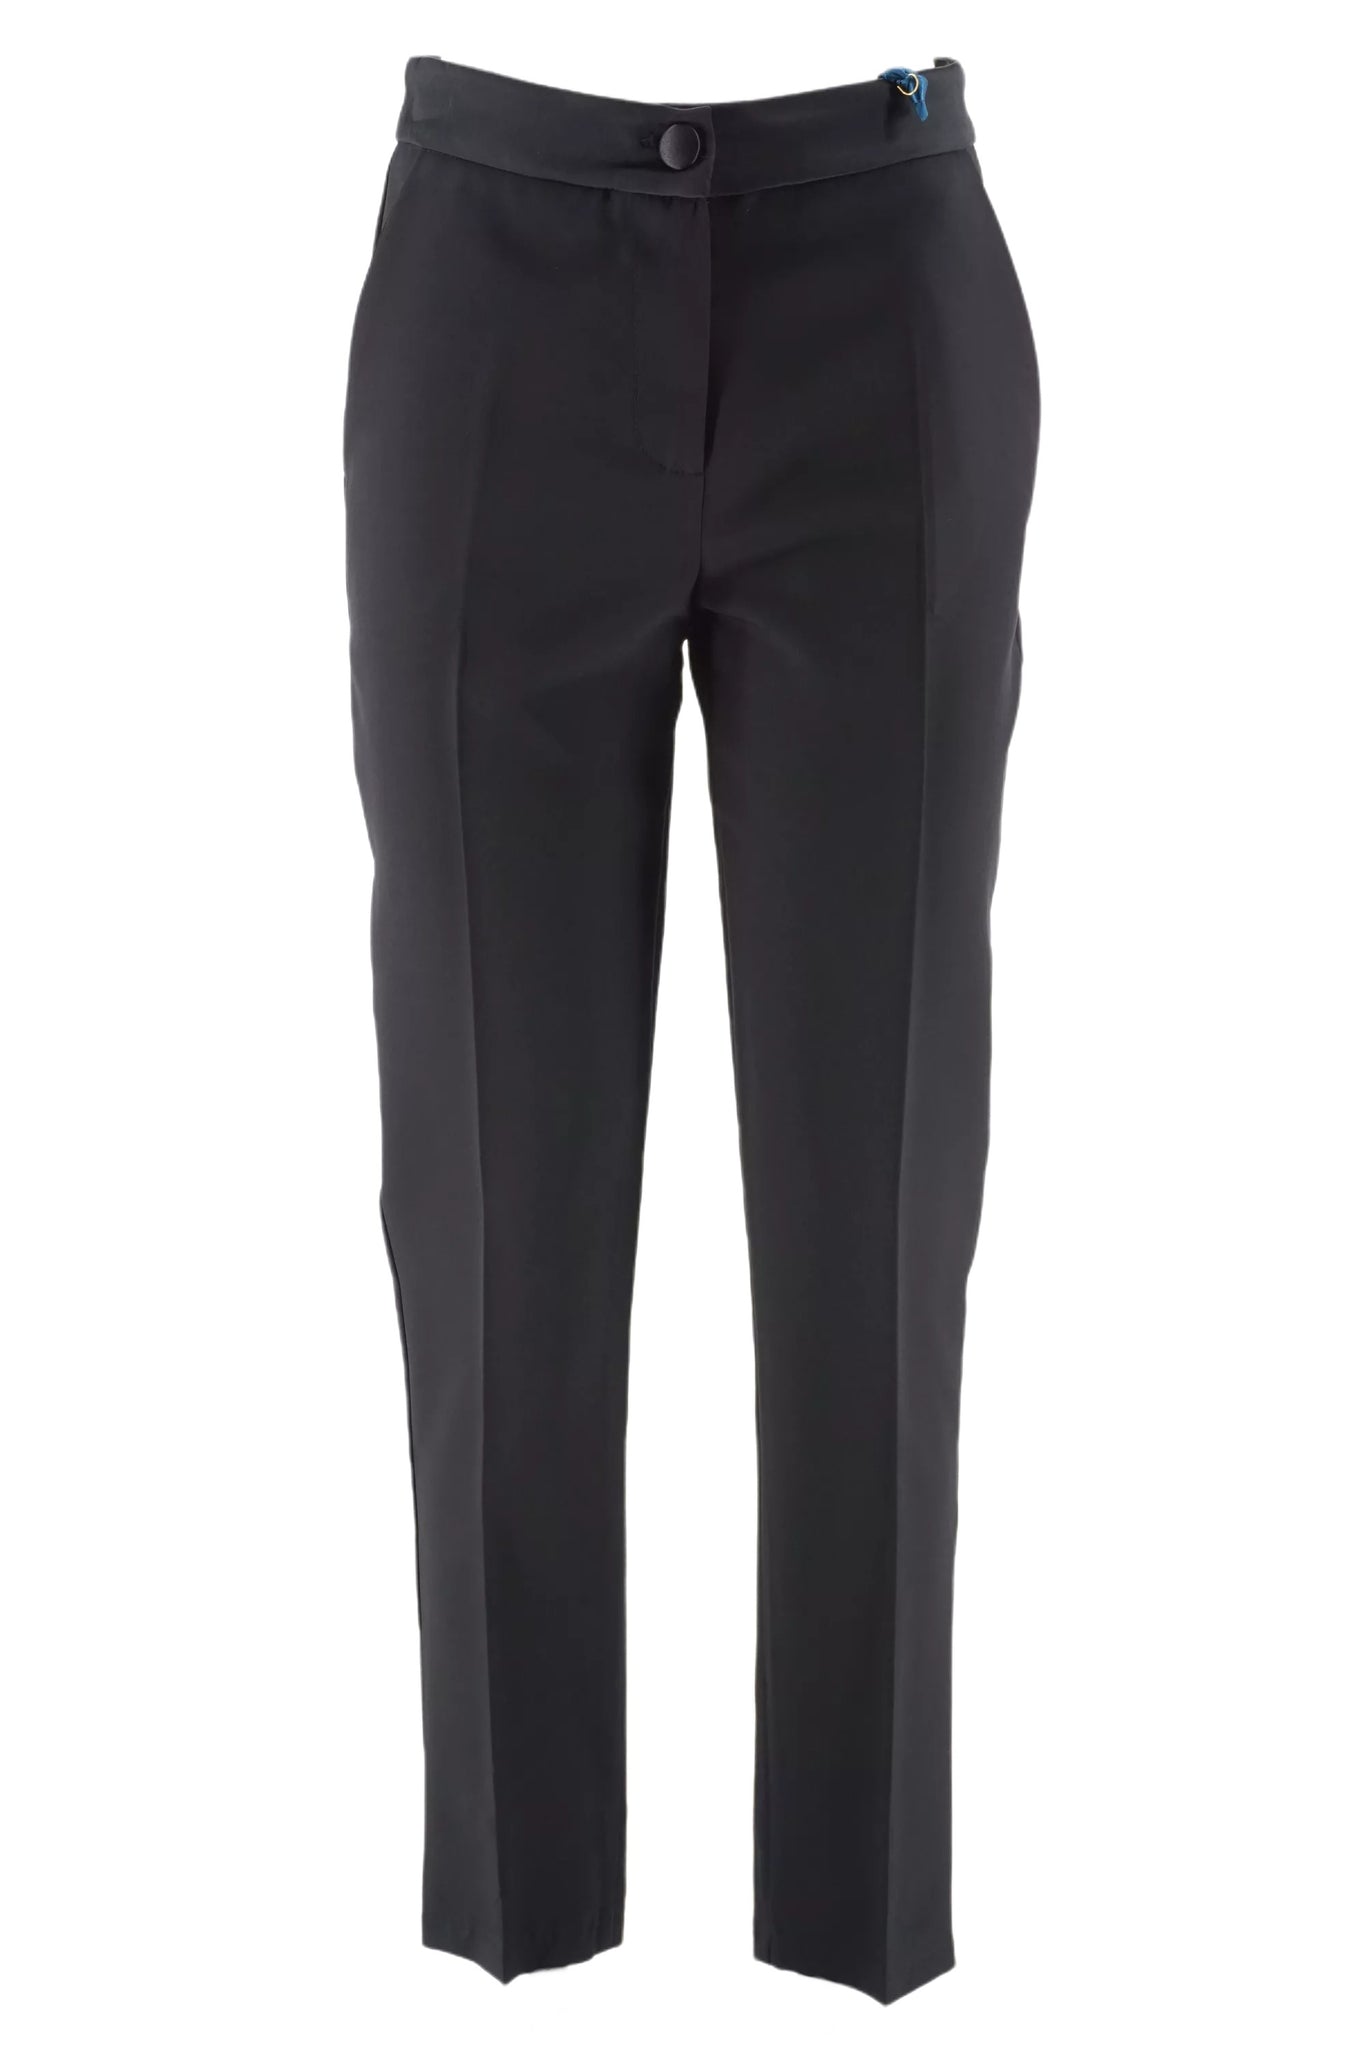 Pantalone Classico Slim Fit / Nero - Ideal Moda